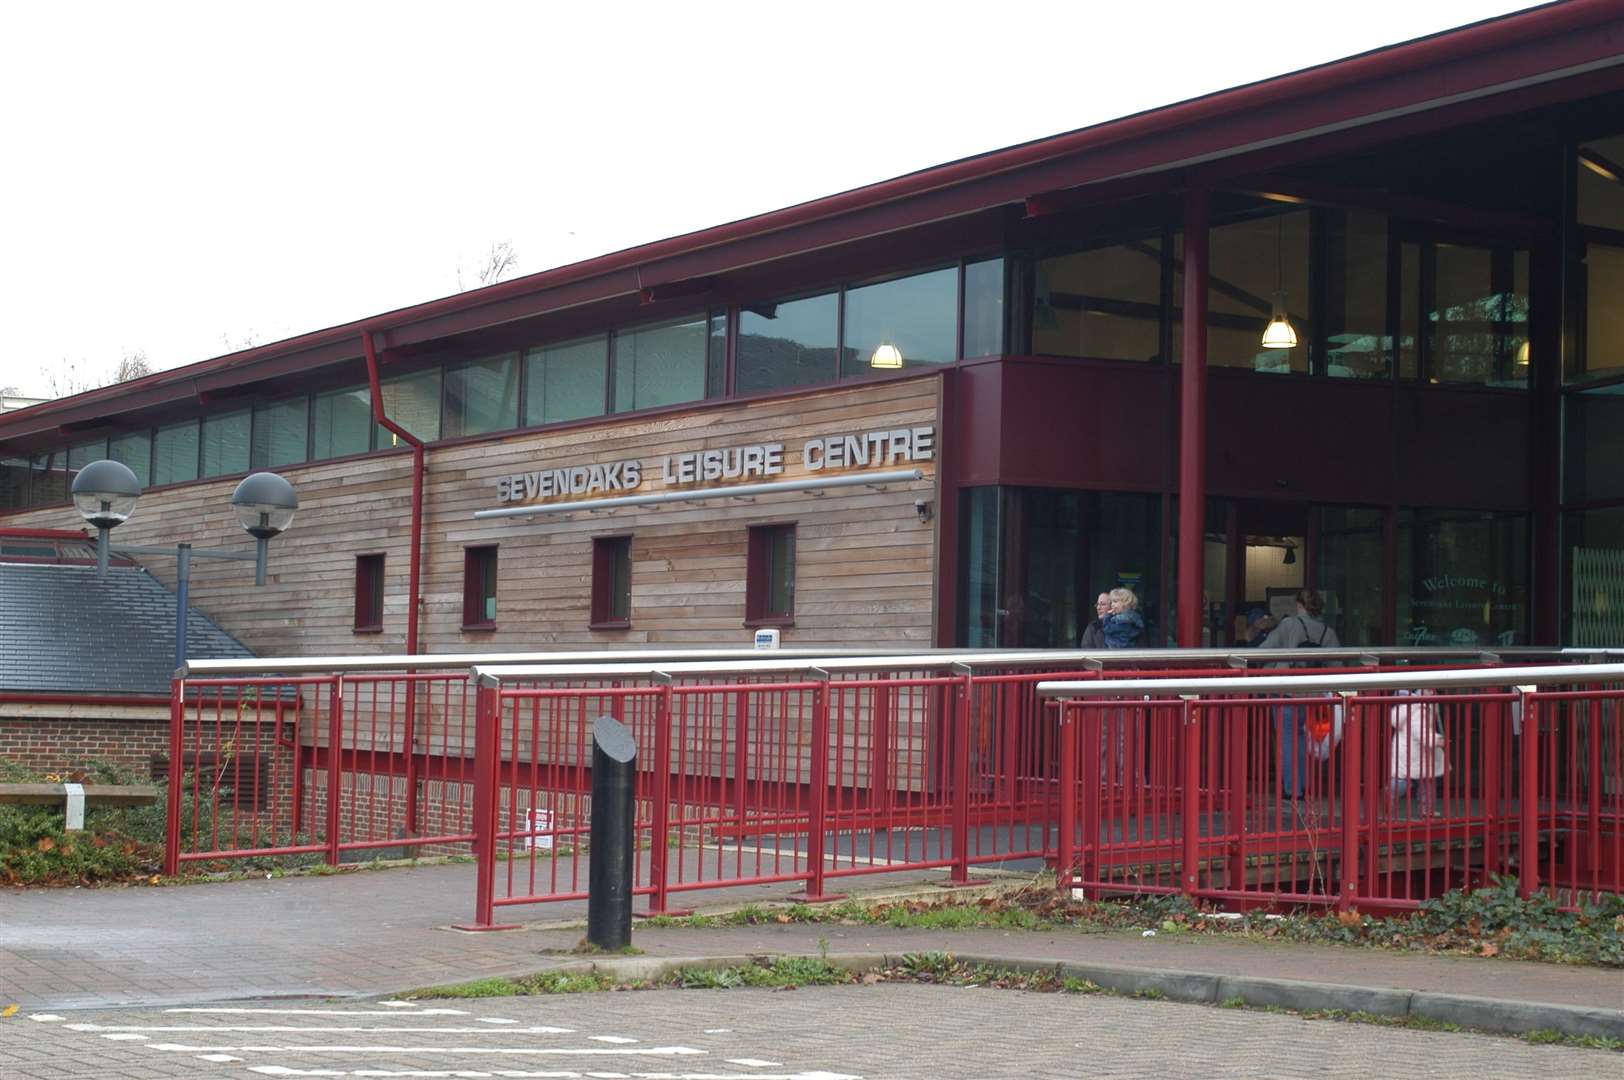 Sevenoaks Leisure Centre is to close